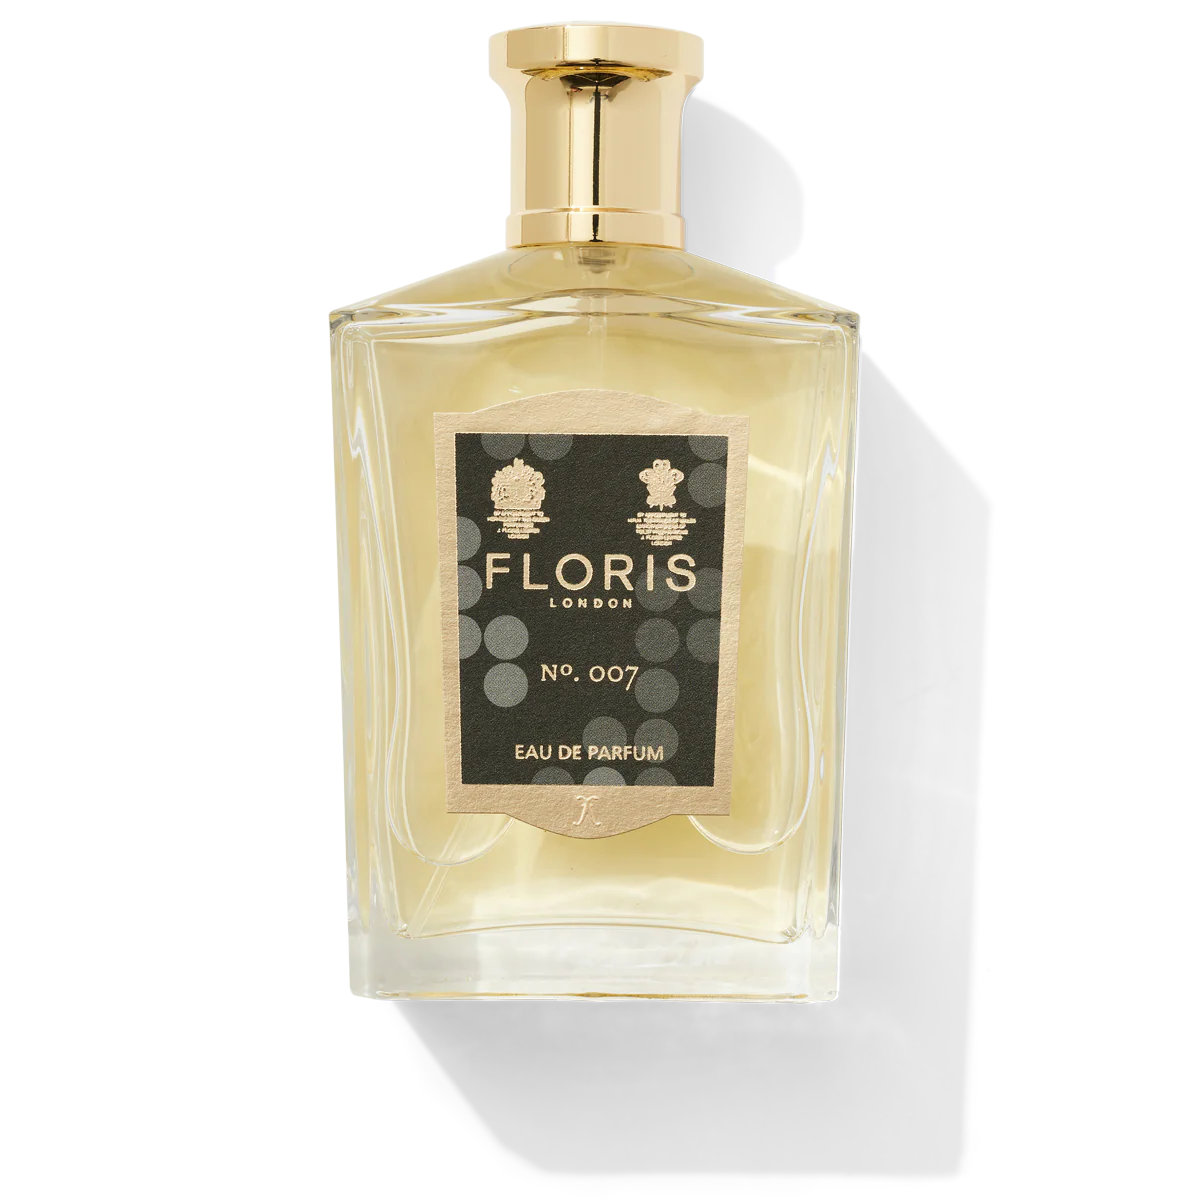 Floris London No. 007 Eau de Parfum 100ml